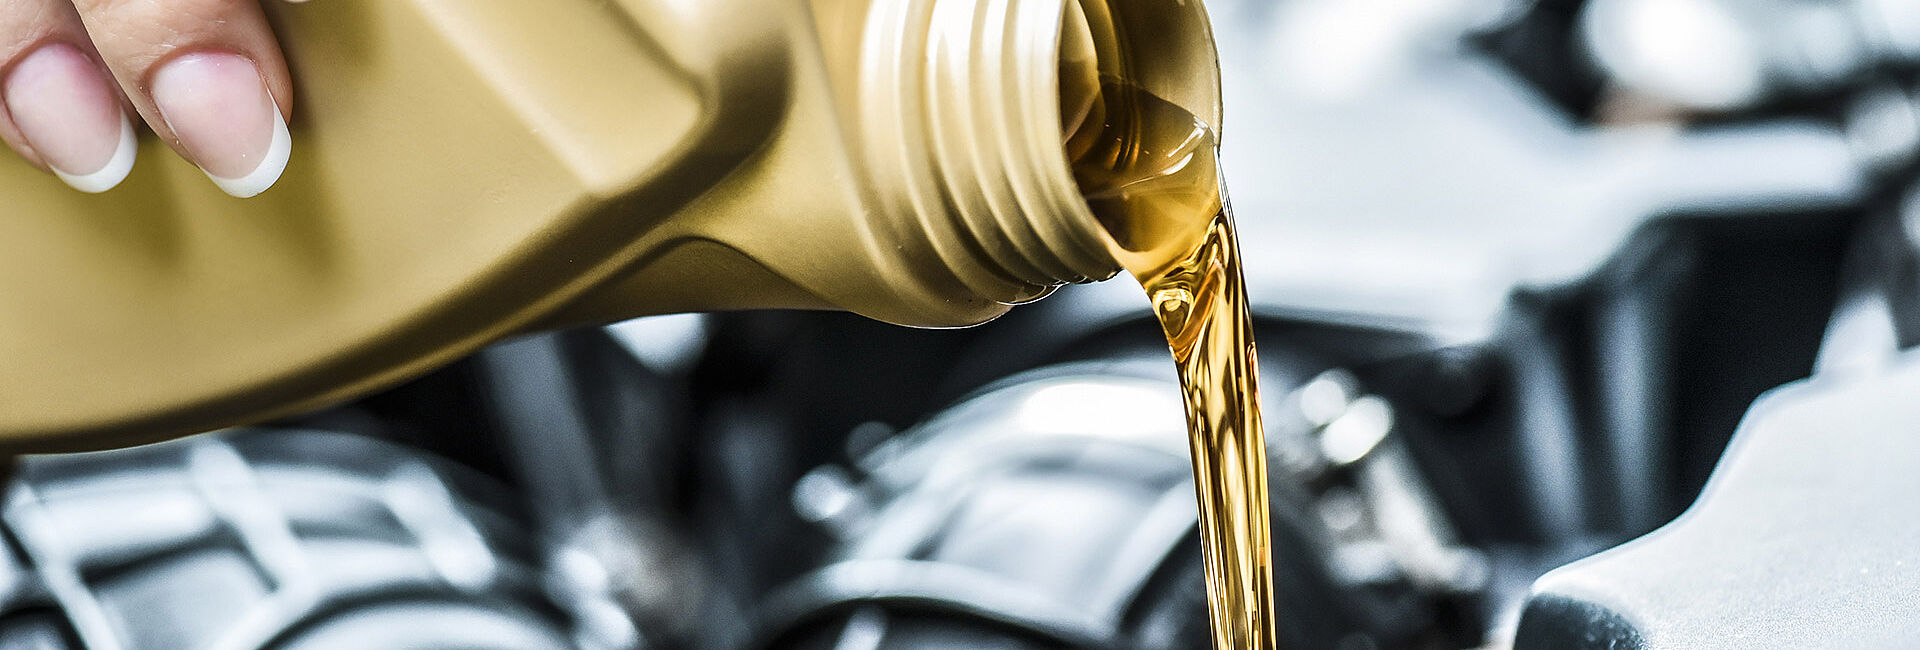 OIL! Schmierstoffe & Motorenöle für KFZ